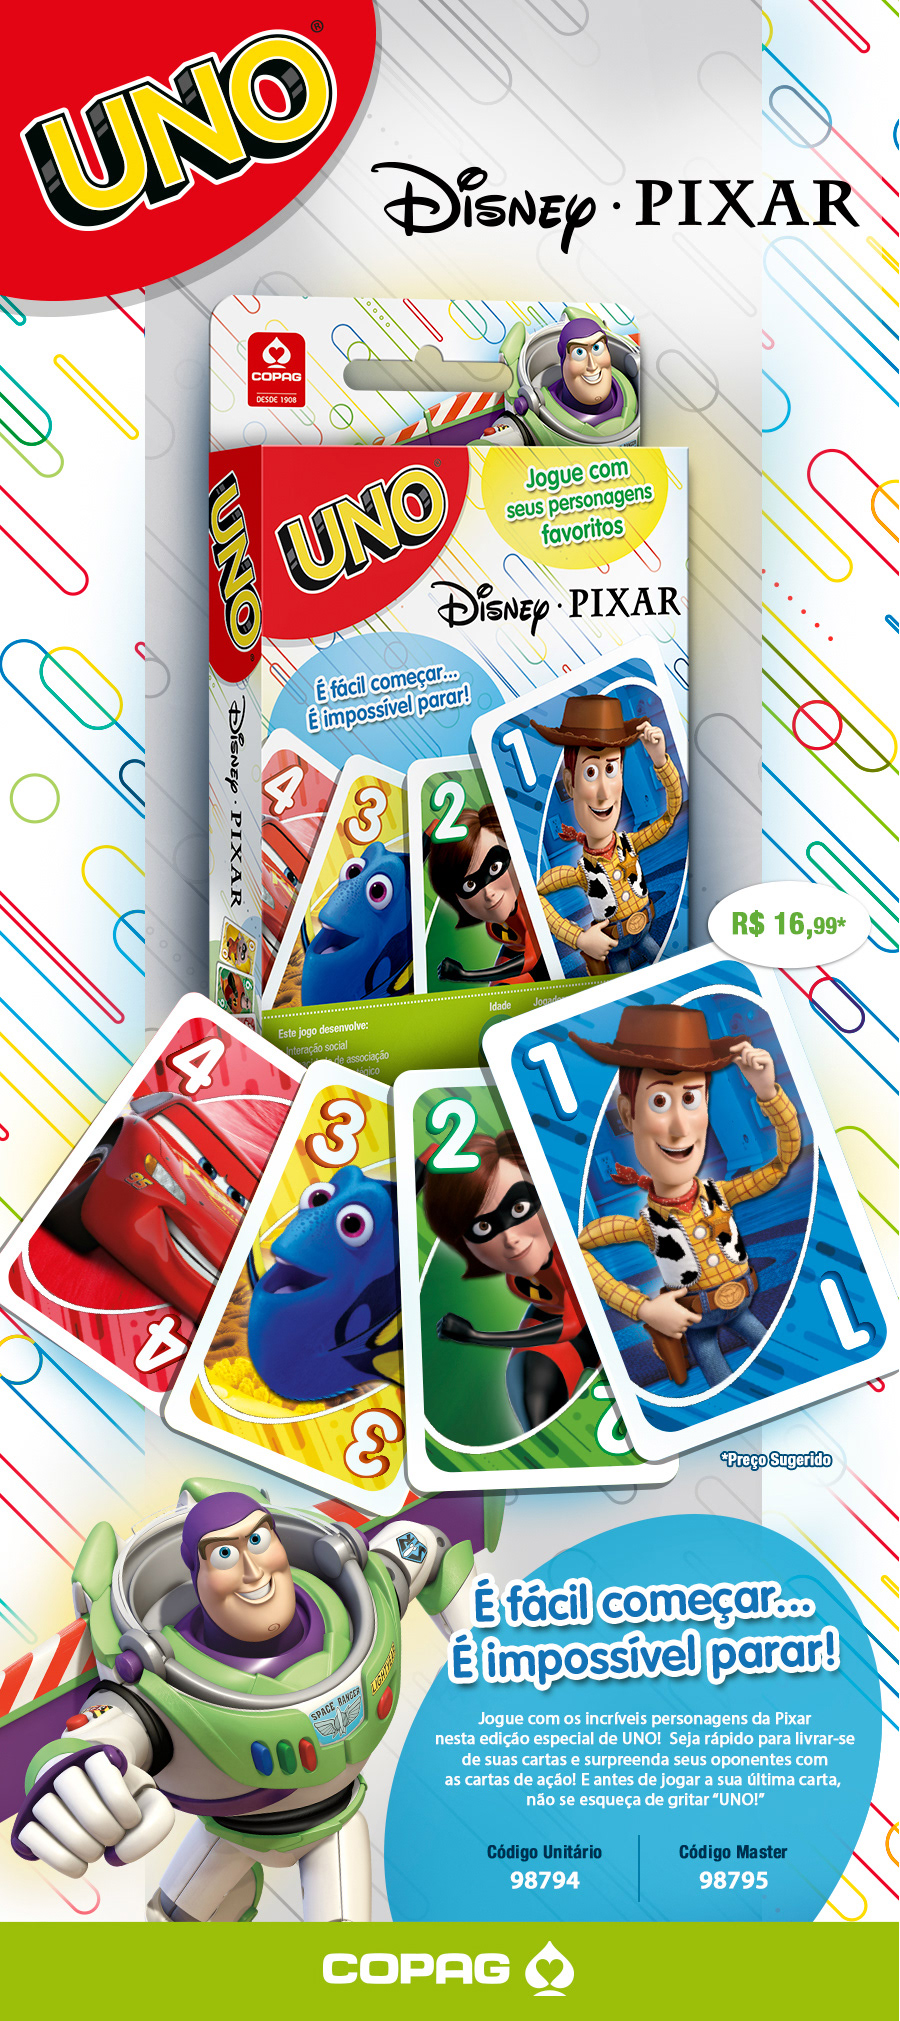 Copag - UNO Disney/Pixar :: Behance